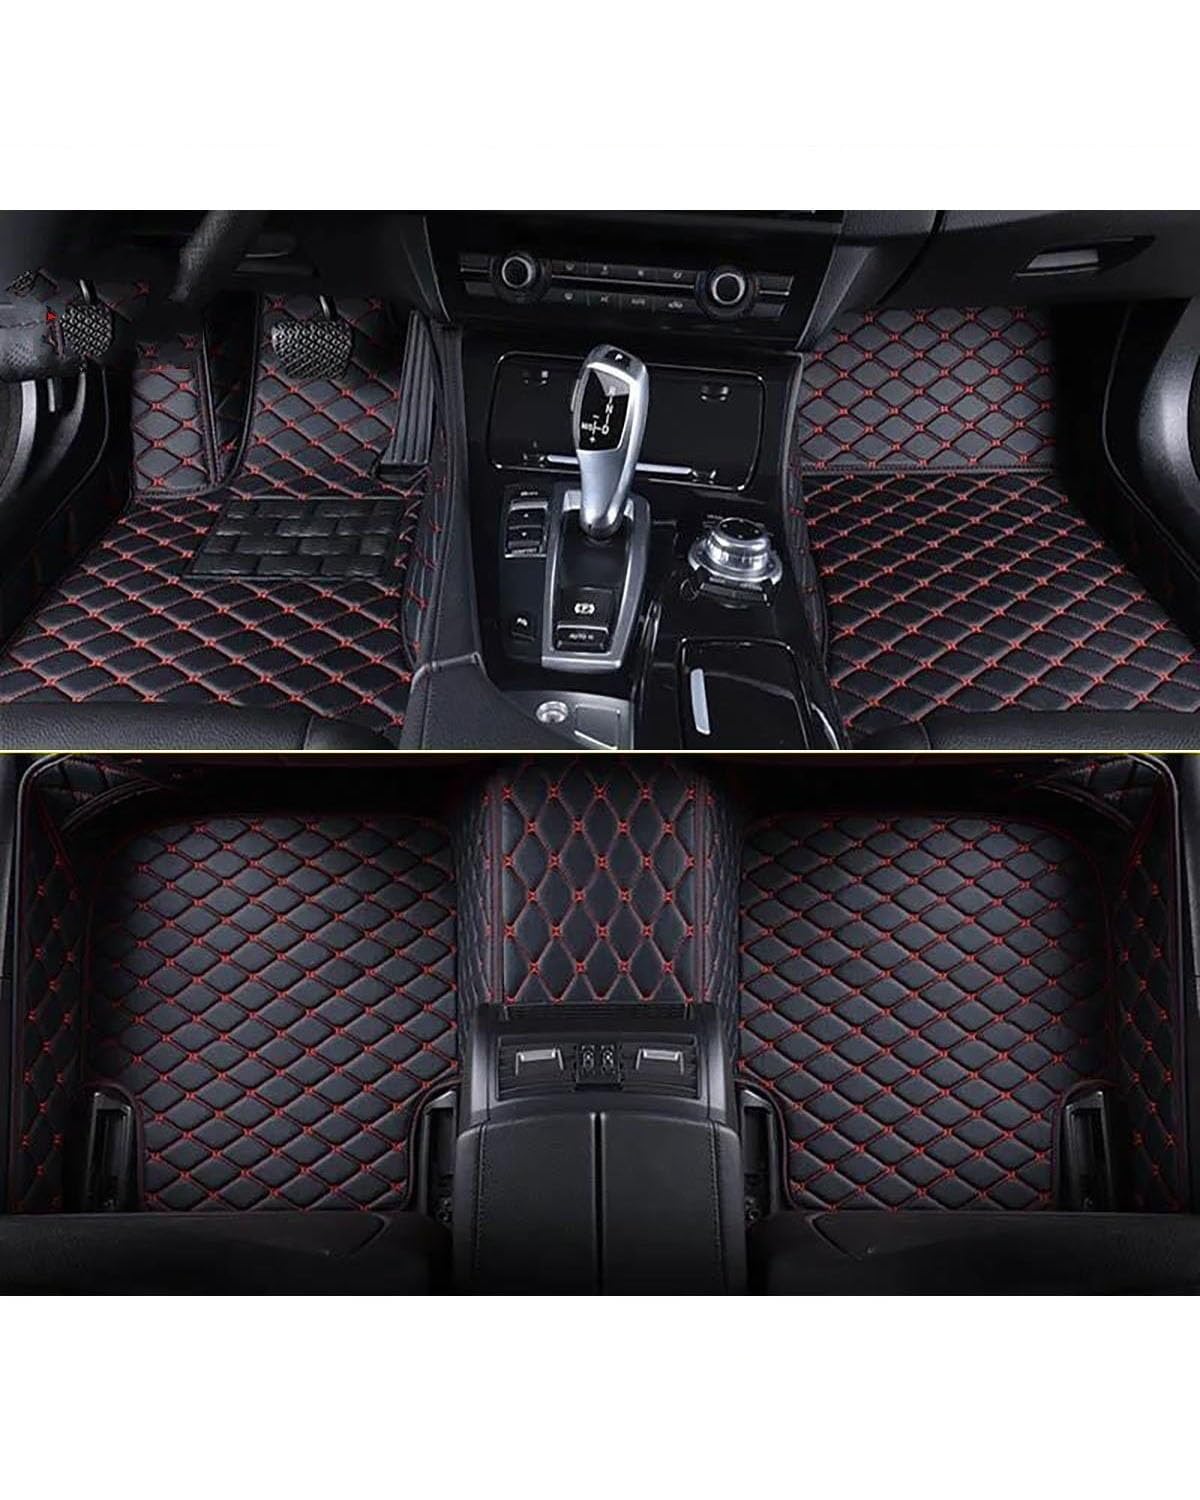 Autofußmatten Auto-Fußmatten Für Ford Für Escape 2012 2013 2014 2015 2016 2017-2023 Autoteppiche Fuß Coche Autoinnenausstattung Automatten(Black Red,2020-2023) von SOHINI